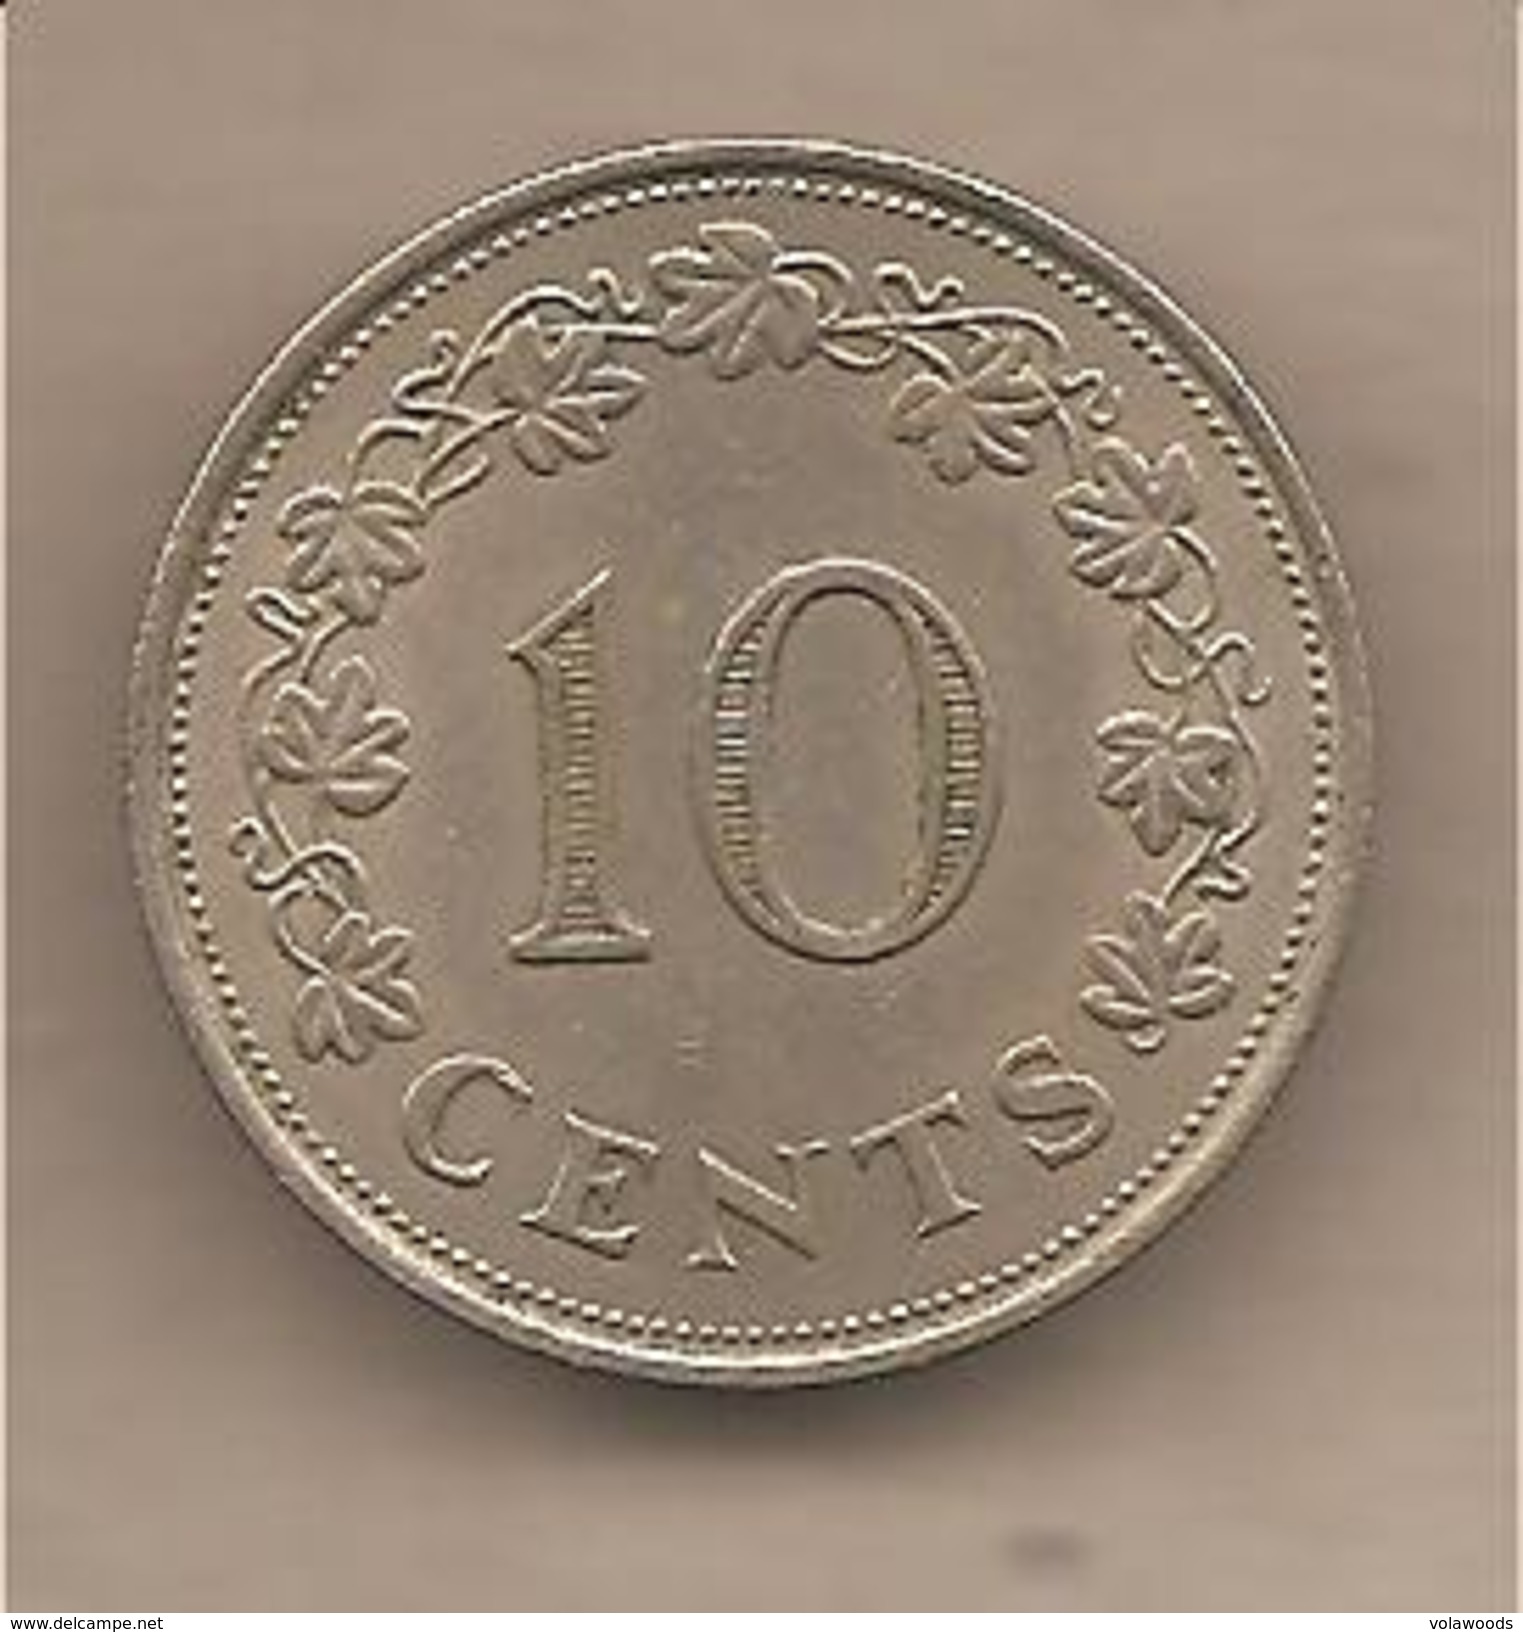 Malta - Moneta Circolata Da 10 Centesimi - 1972 - Malta